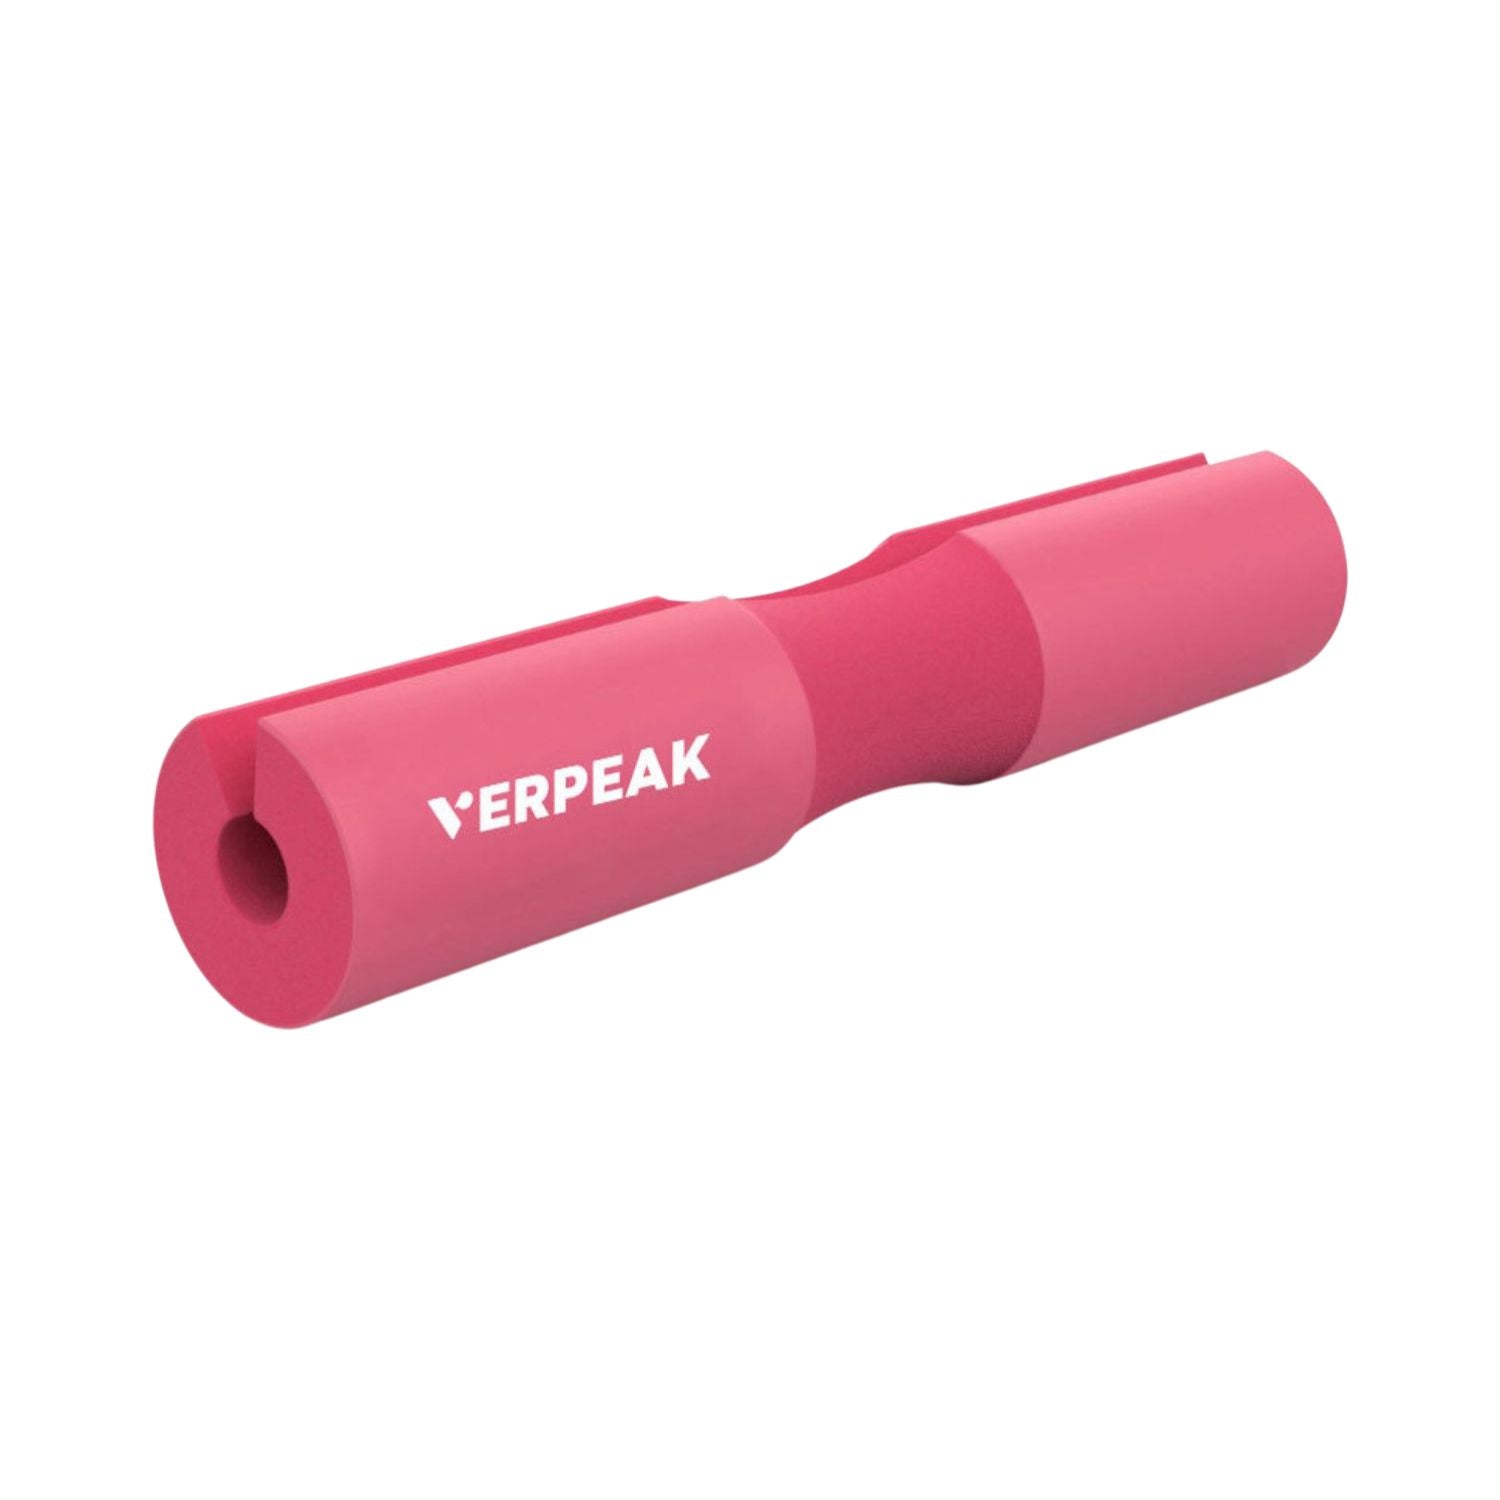 VERPEAK Barbell Squat Pad (Pink)